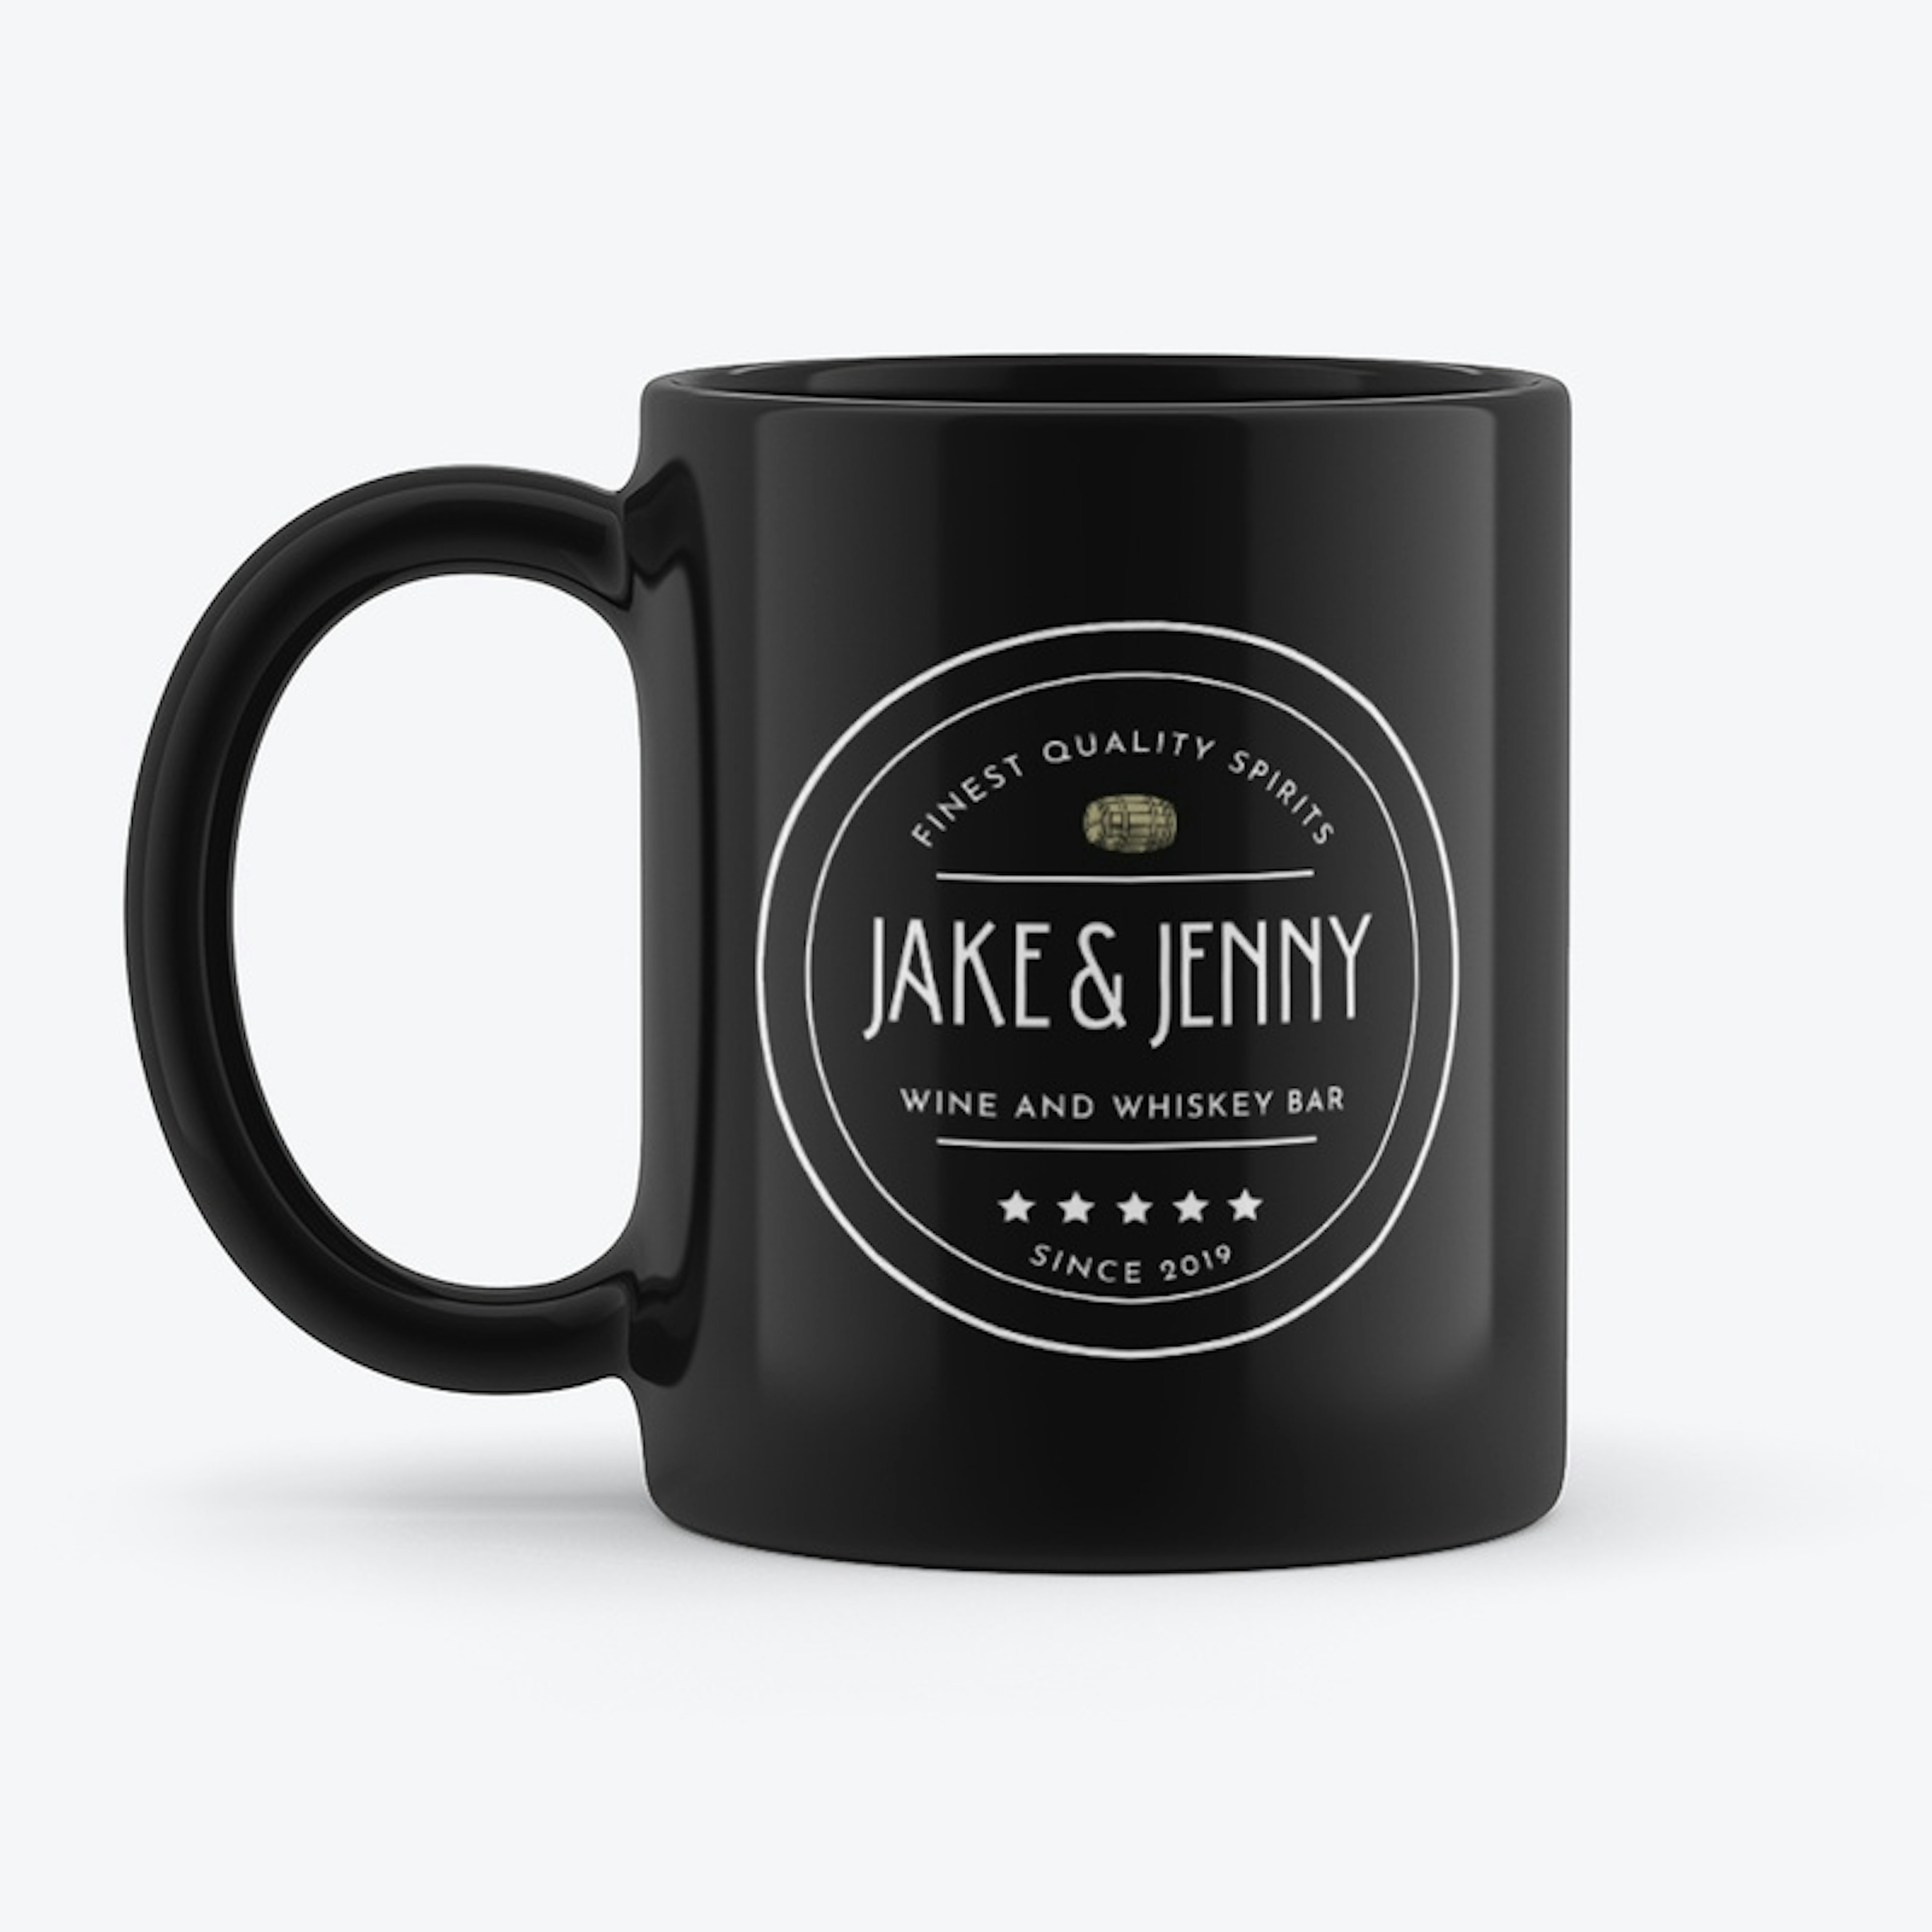 Jake and Jenny Shop